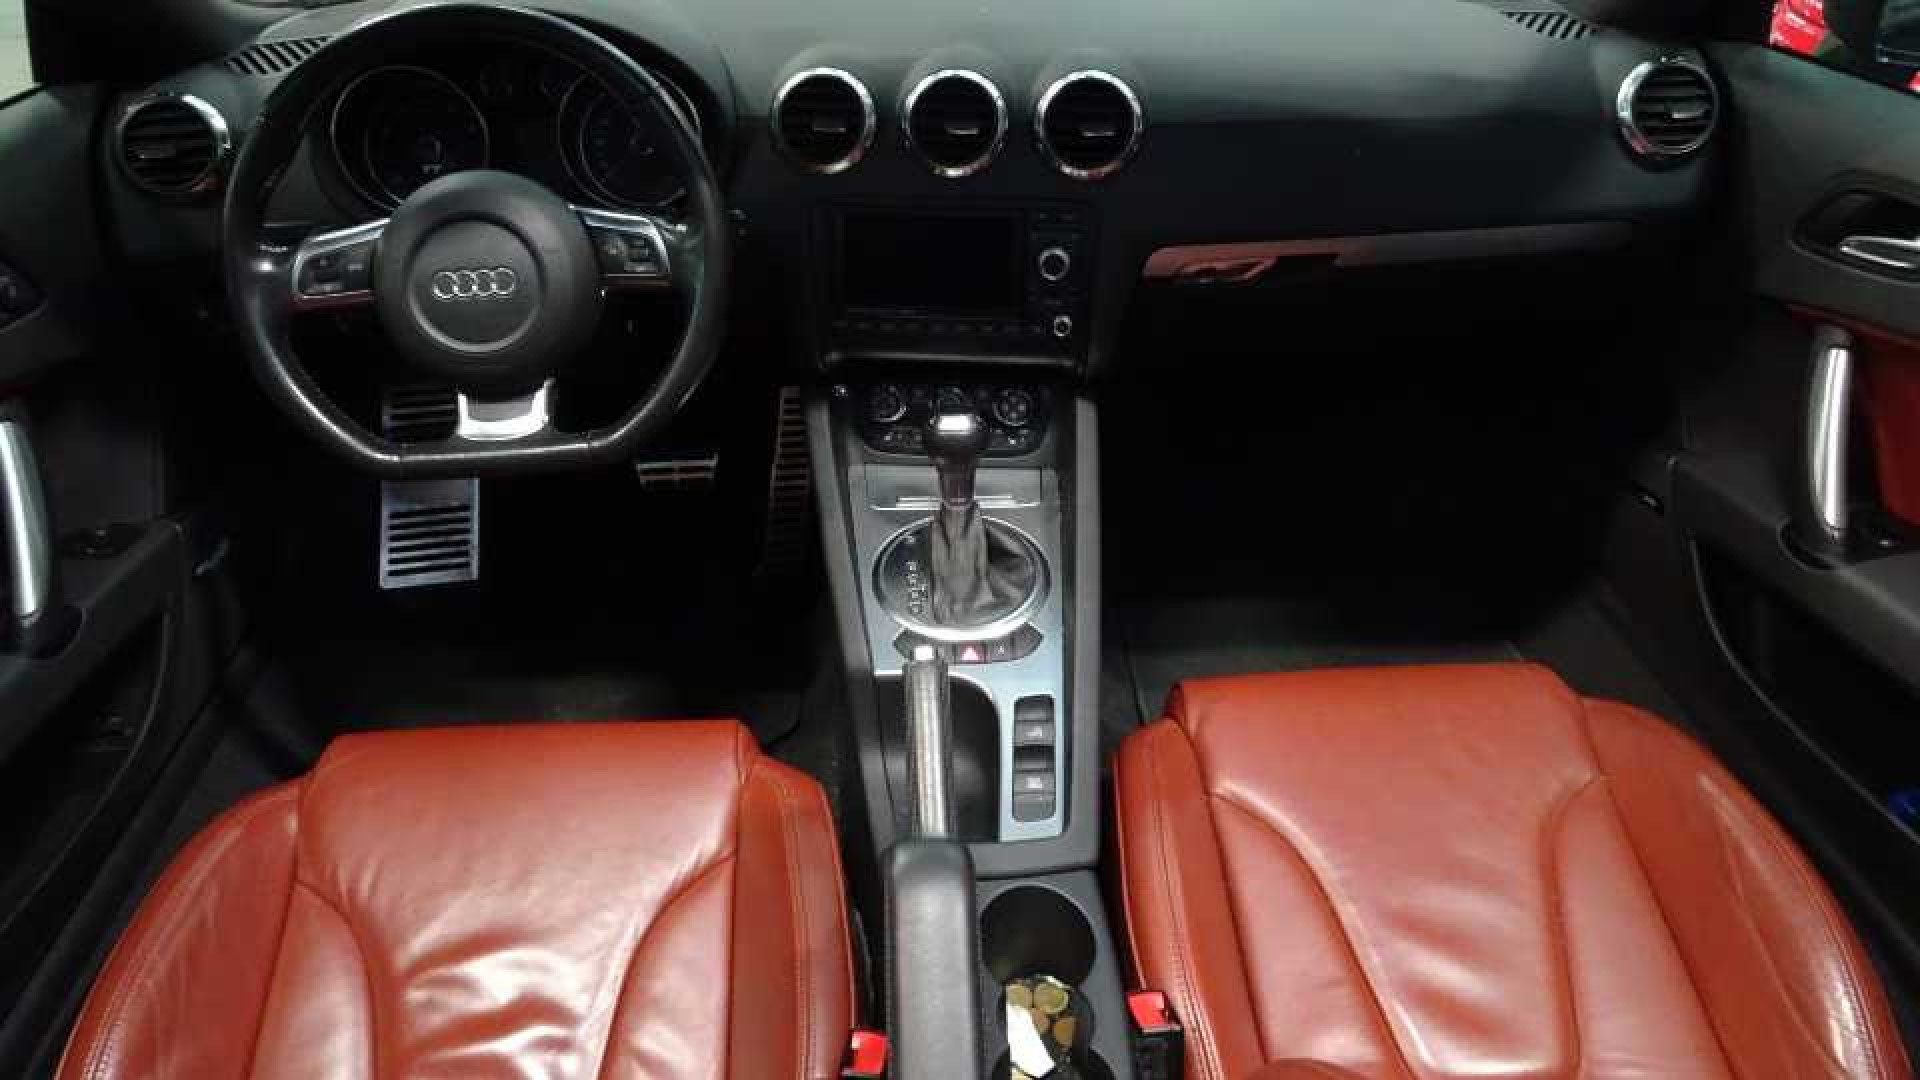 Weggesleepte Audi TT van Patricia Paay te koop! Zie foto's